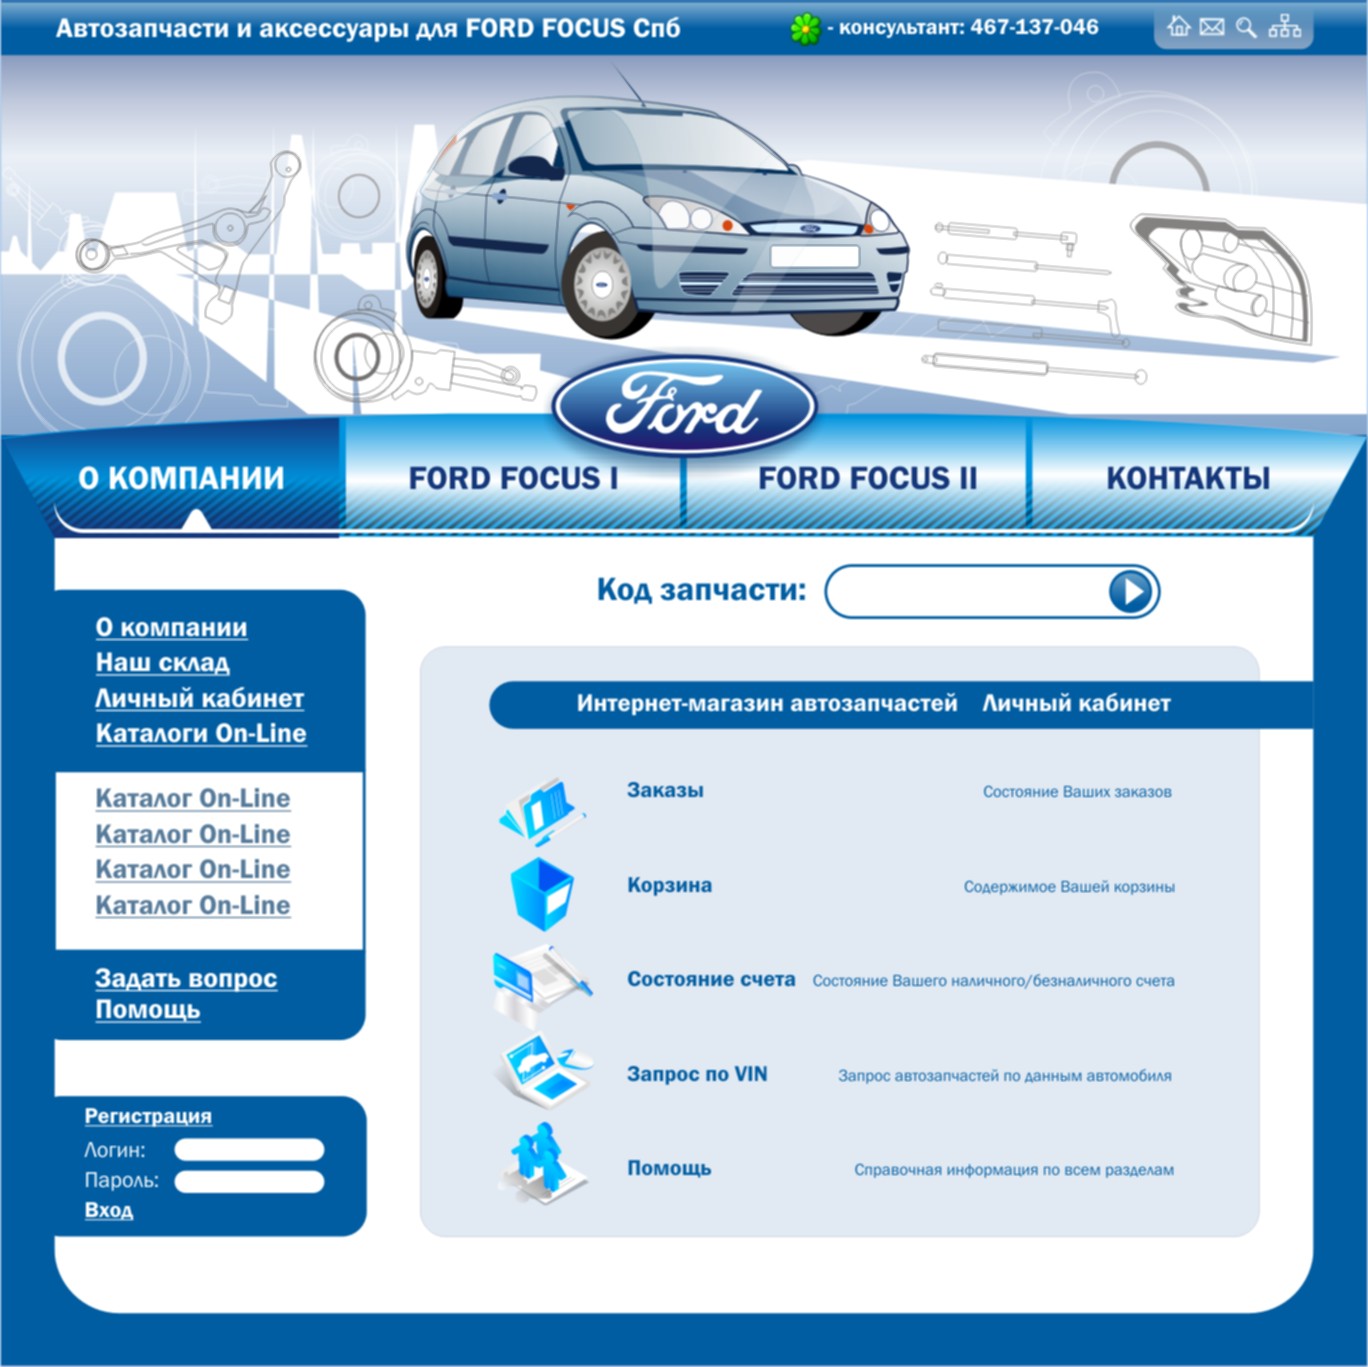 Разработка дизайна сайта для интернет сагазина фирменных автозапчастей